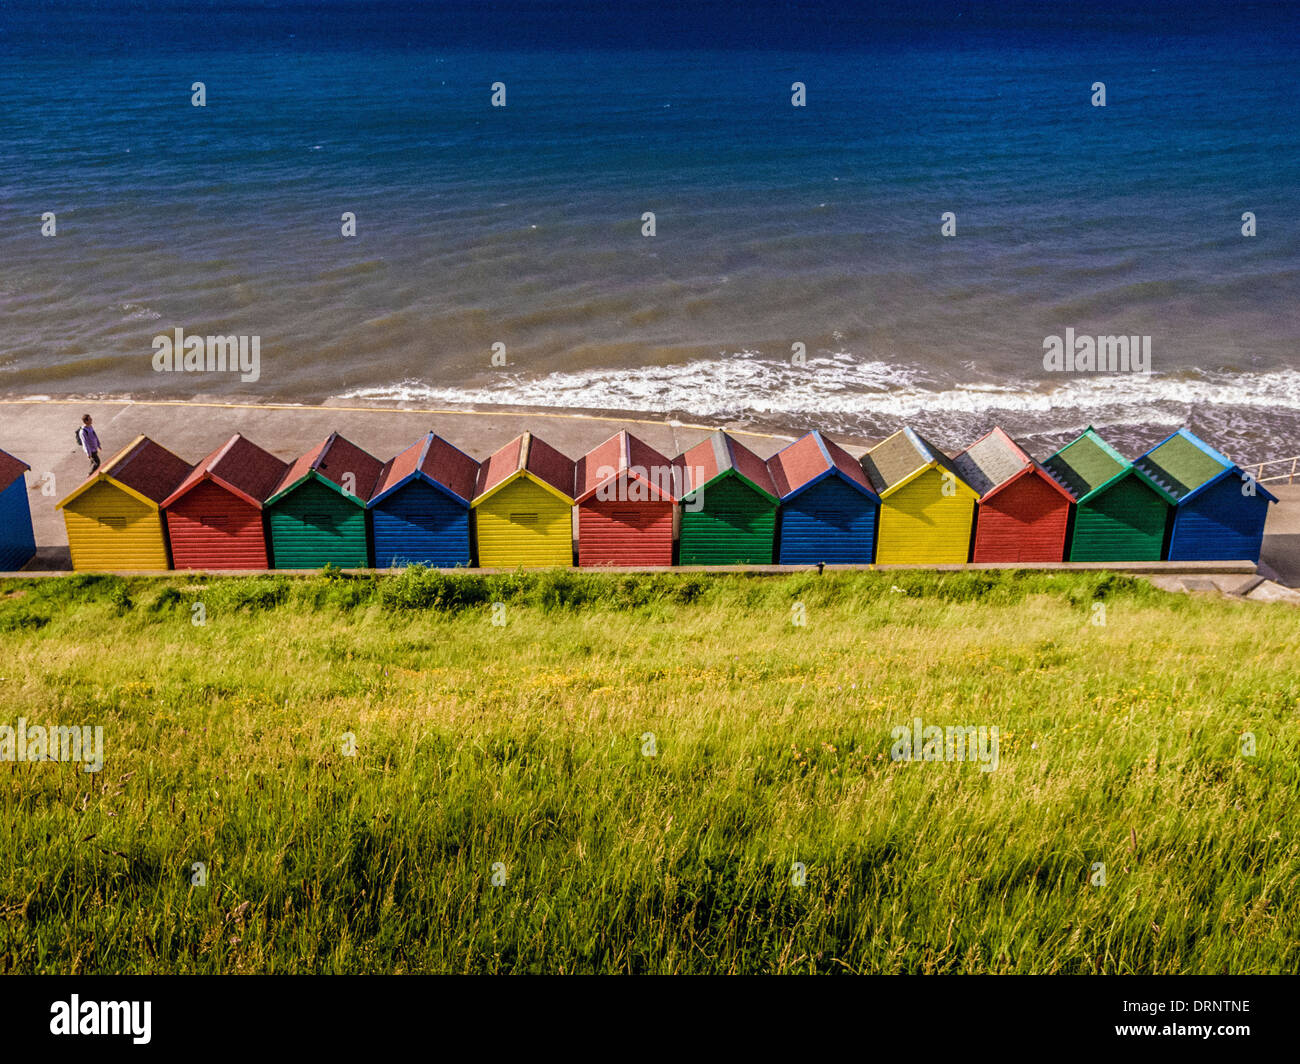 Coloridas cabañas de playa en West Cliff, Whitby, North Yorkshire. Fotografiado desde atrás con el mar en el fondo. Foto de stock